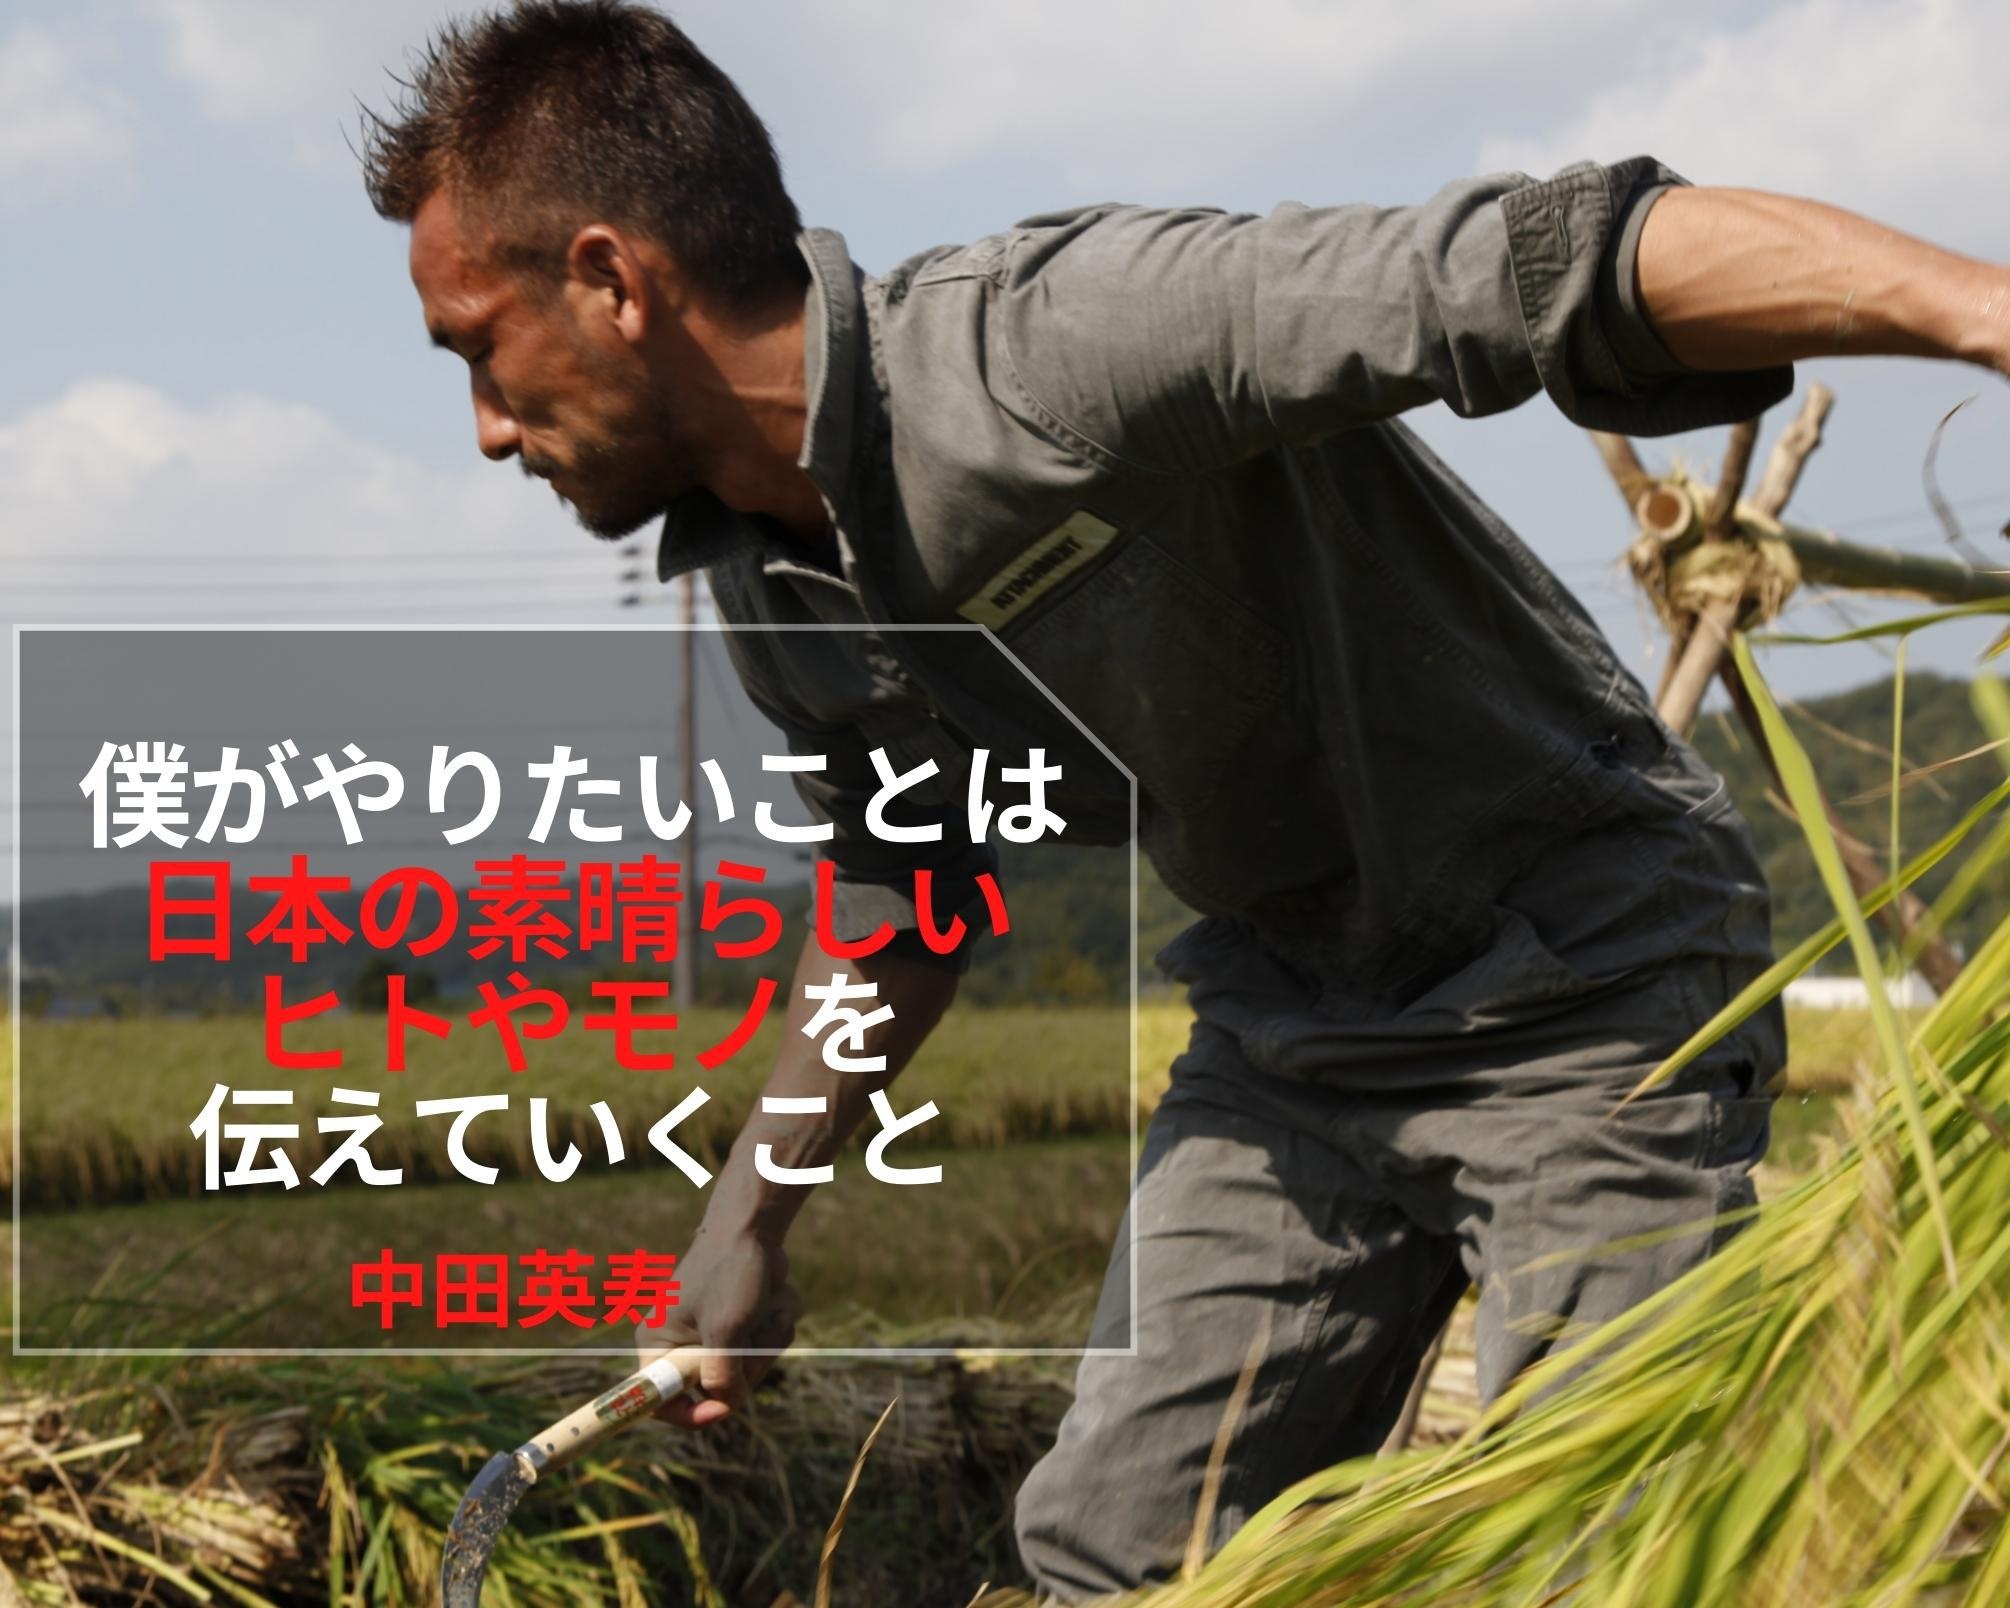 日本の素晴らしいヒトやモノを伝え続ける、中田英寿の想い「より多くの人をハッピーに」